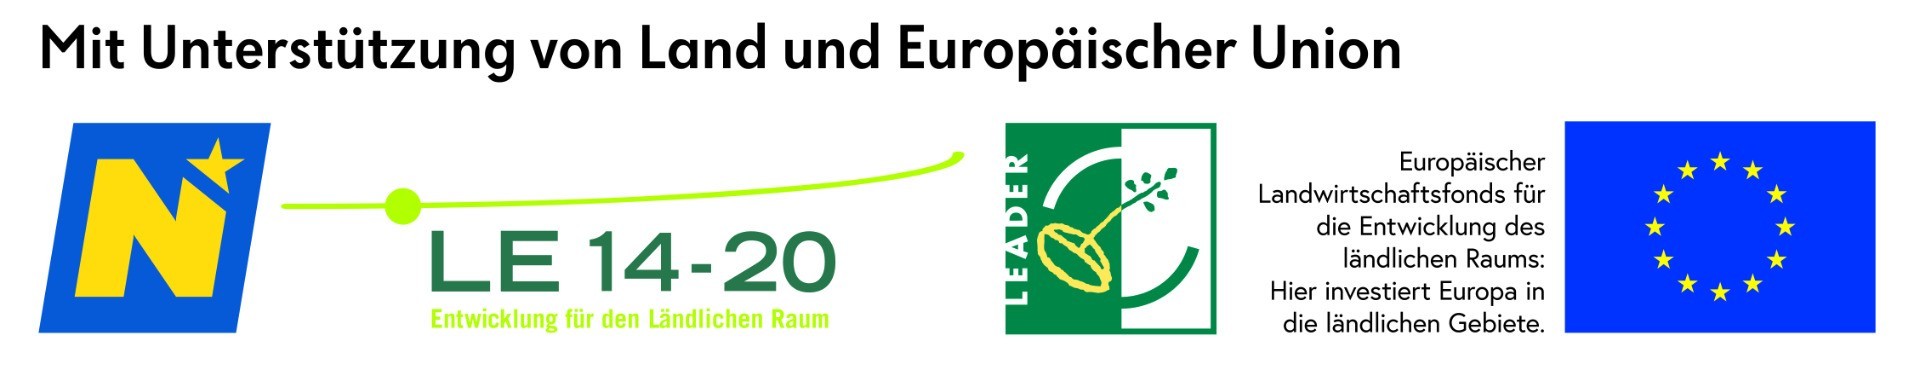 Logoleiste_eco_2020-12.jpg